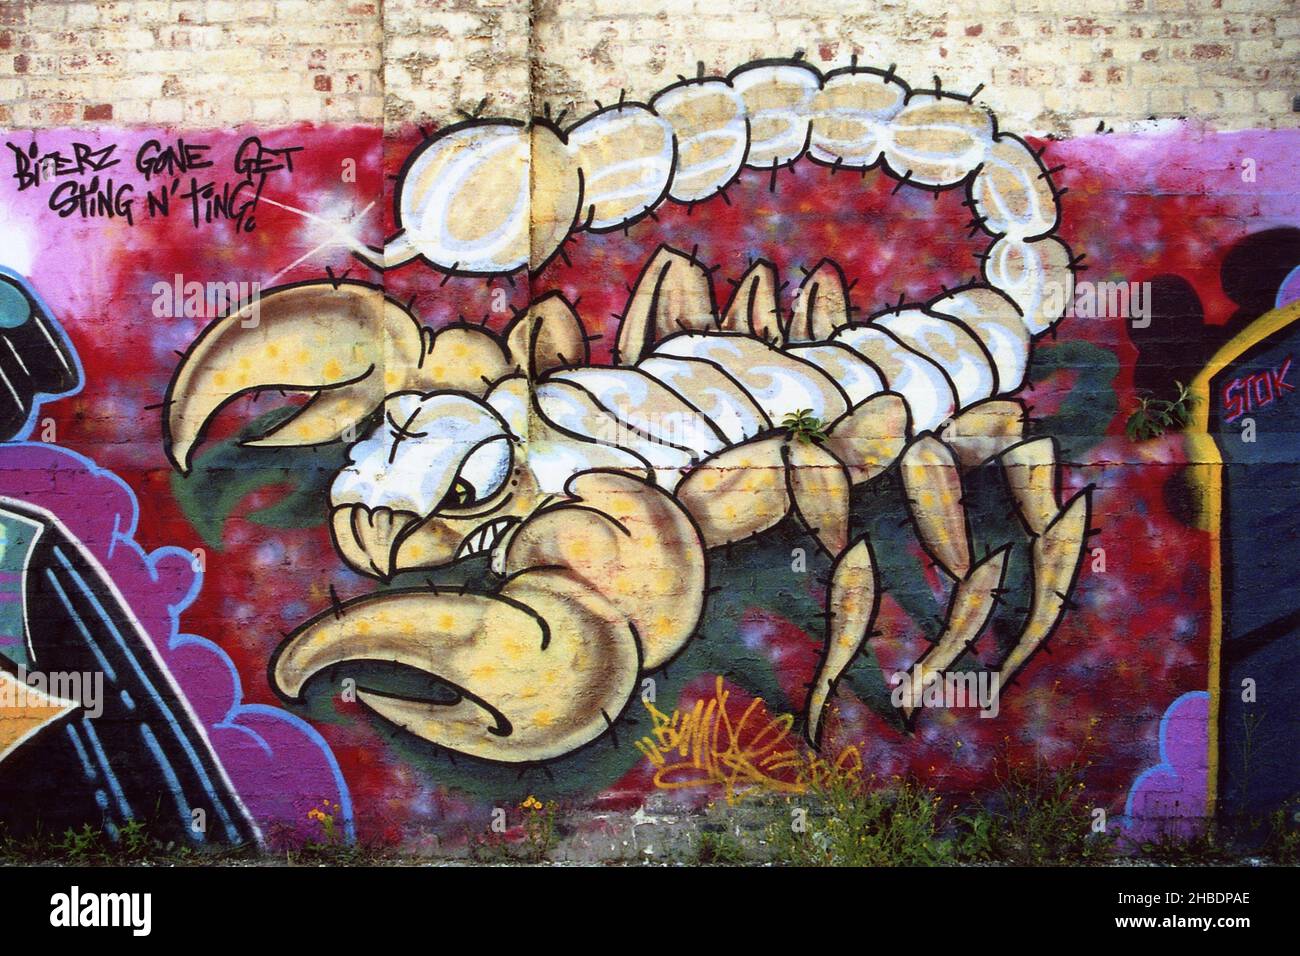 Scorpion Graffiti Art, Liverpool, Merseyside, UK Stock Photo